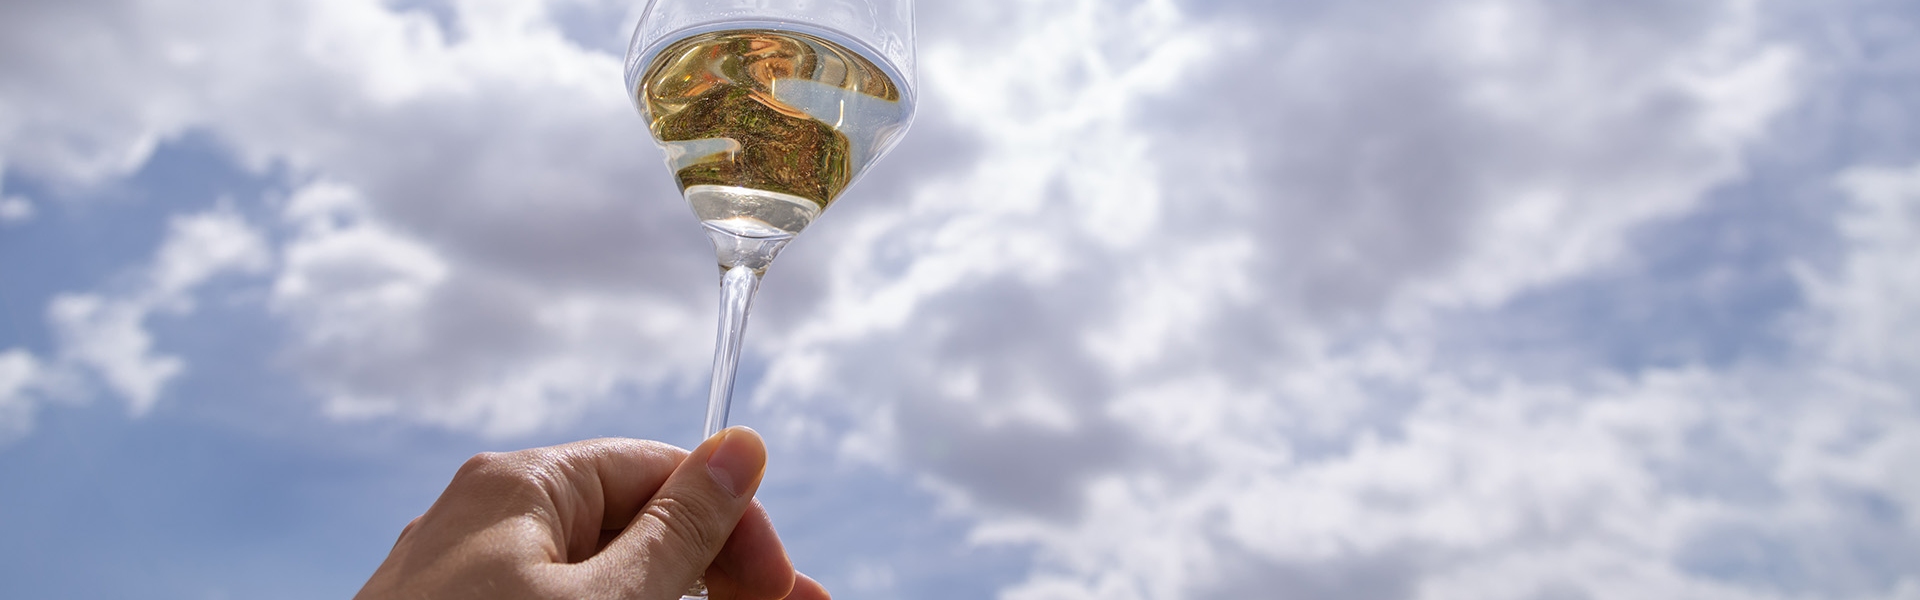 Chakra white wine in tasting glass